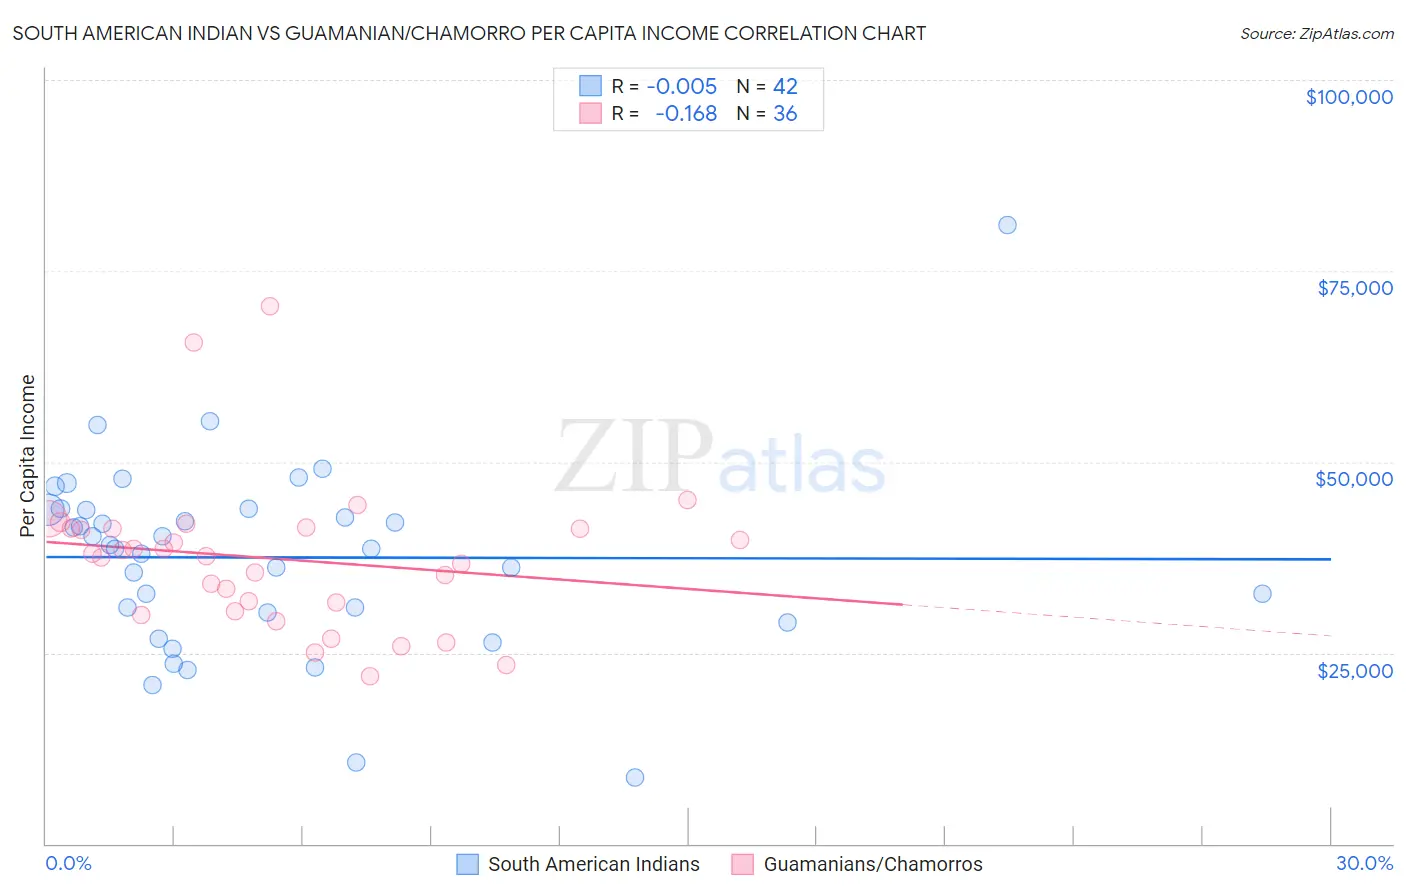 South American Indian vs Guamanian/Chamorro Per Capita Income